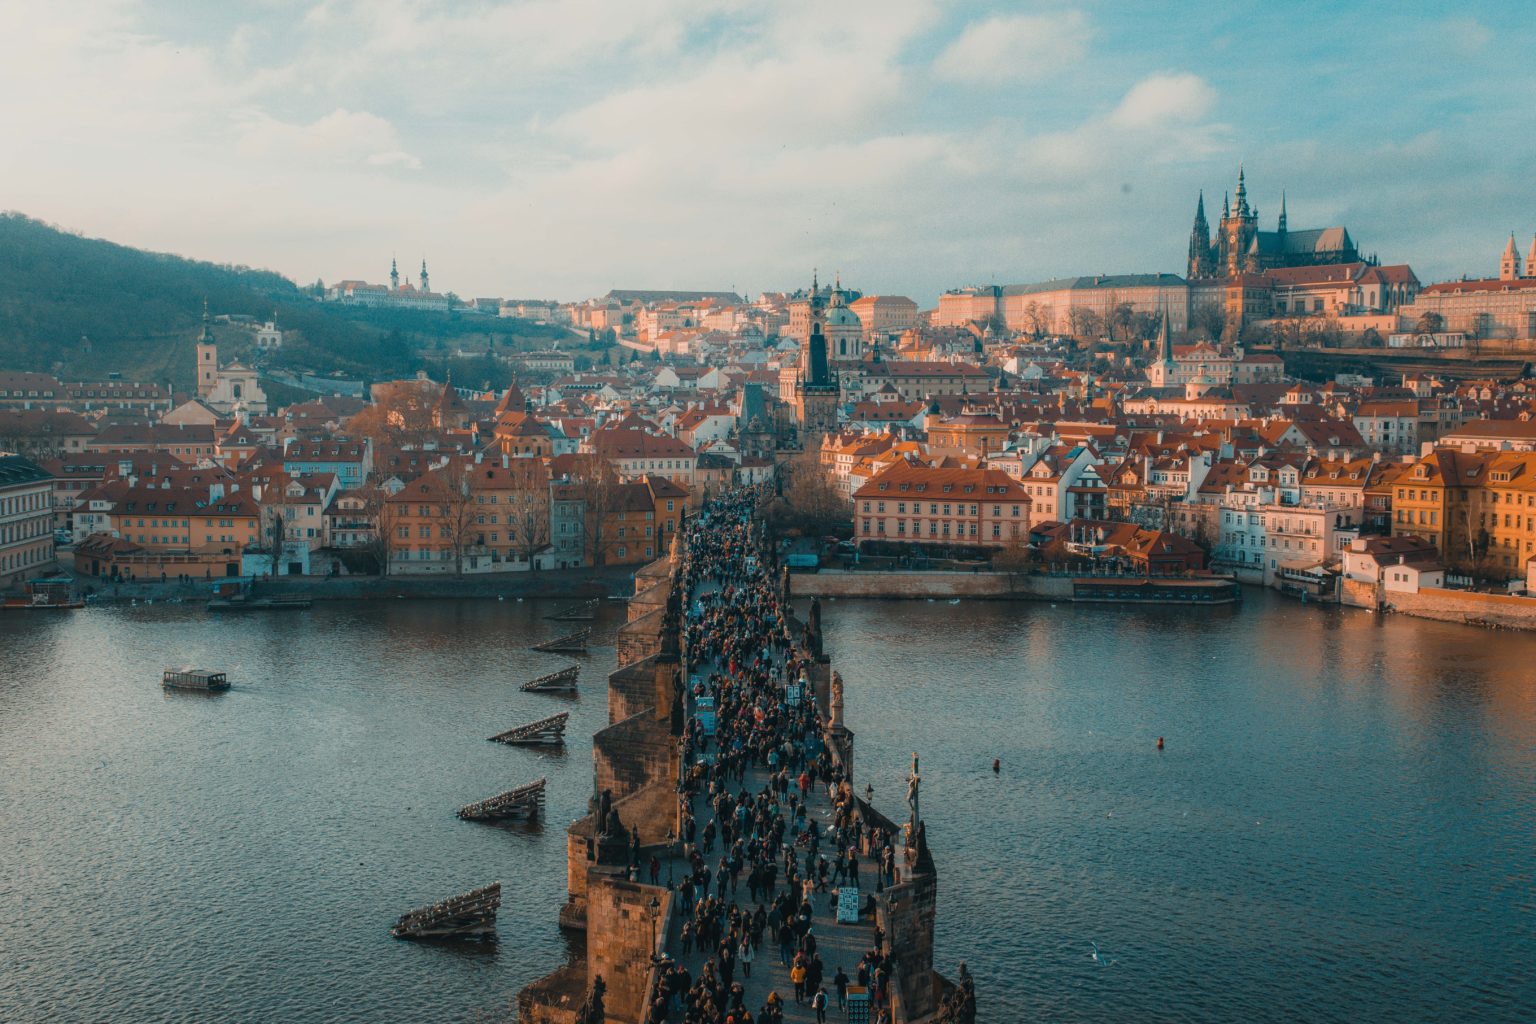 Viele Menschen laufen über eine große Brücke, im Hintergrund ist die Altstadt Prags zu sehen